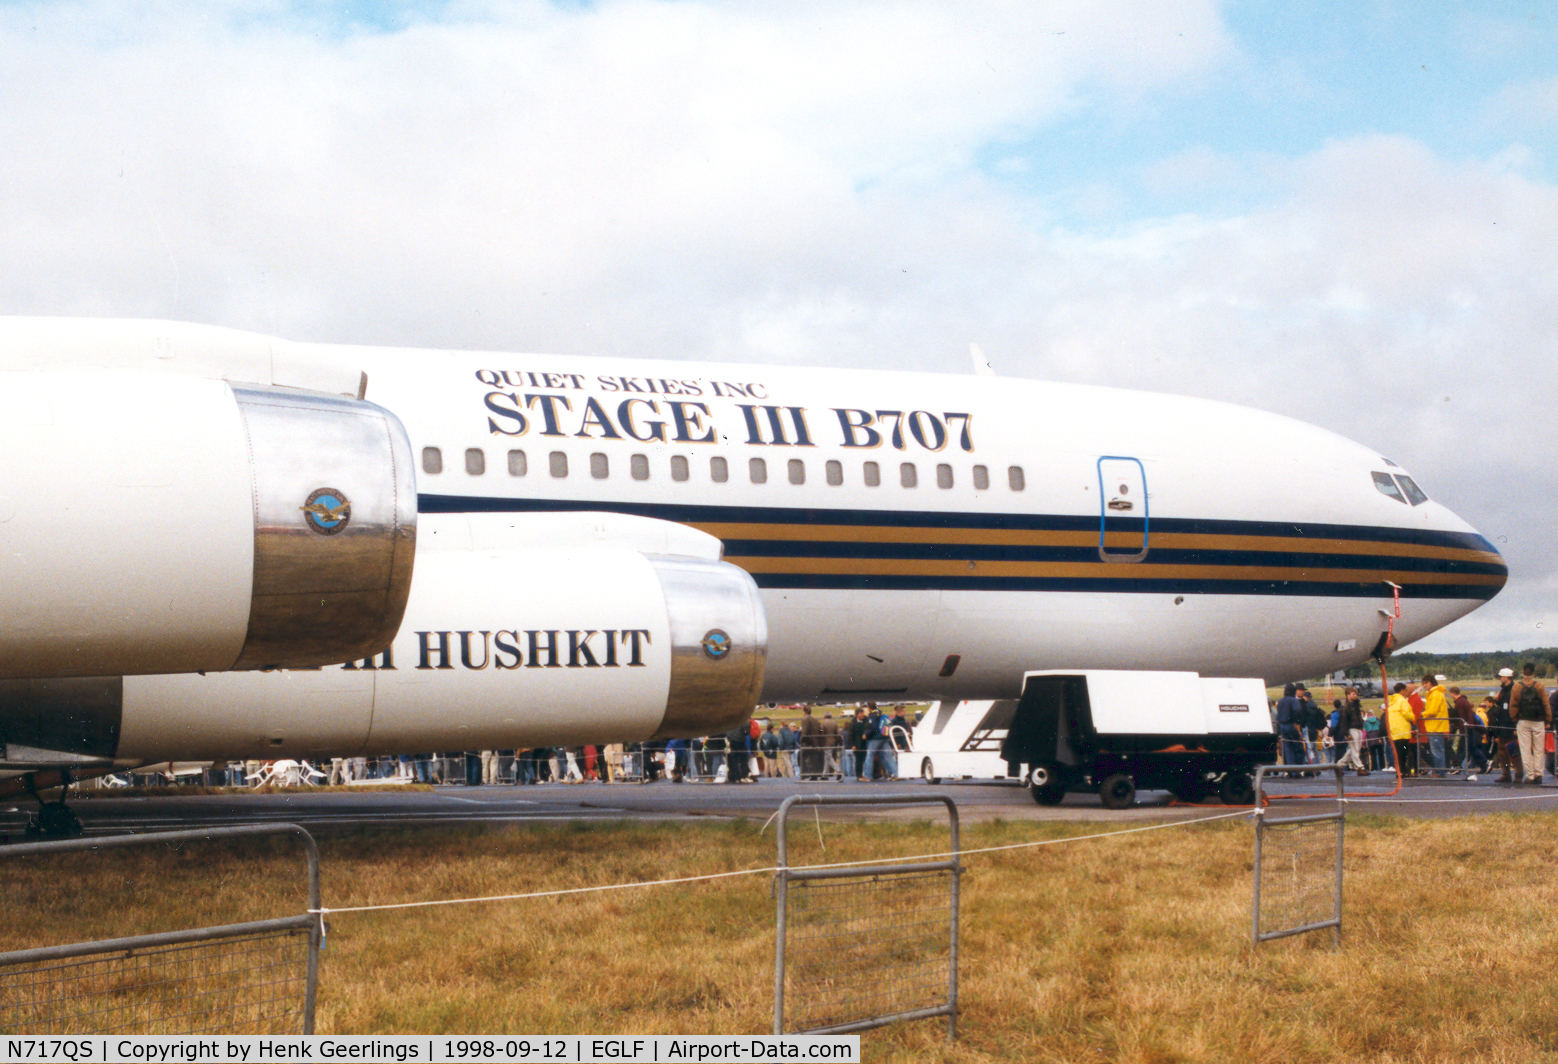 N717QS, 1974 Boeing 707-3J6B C/N 20717, Quiet Skies Inc

Farnborough Show sep 1998